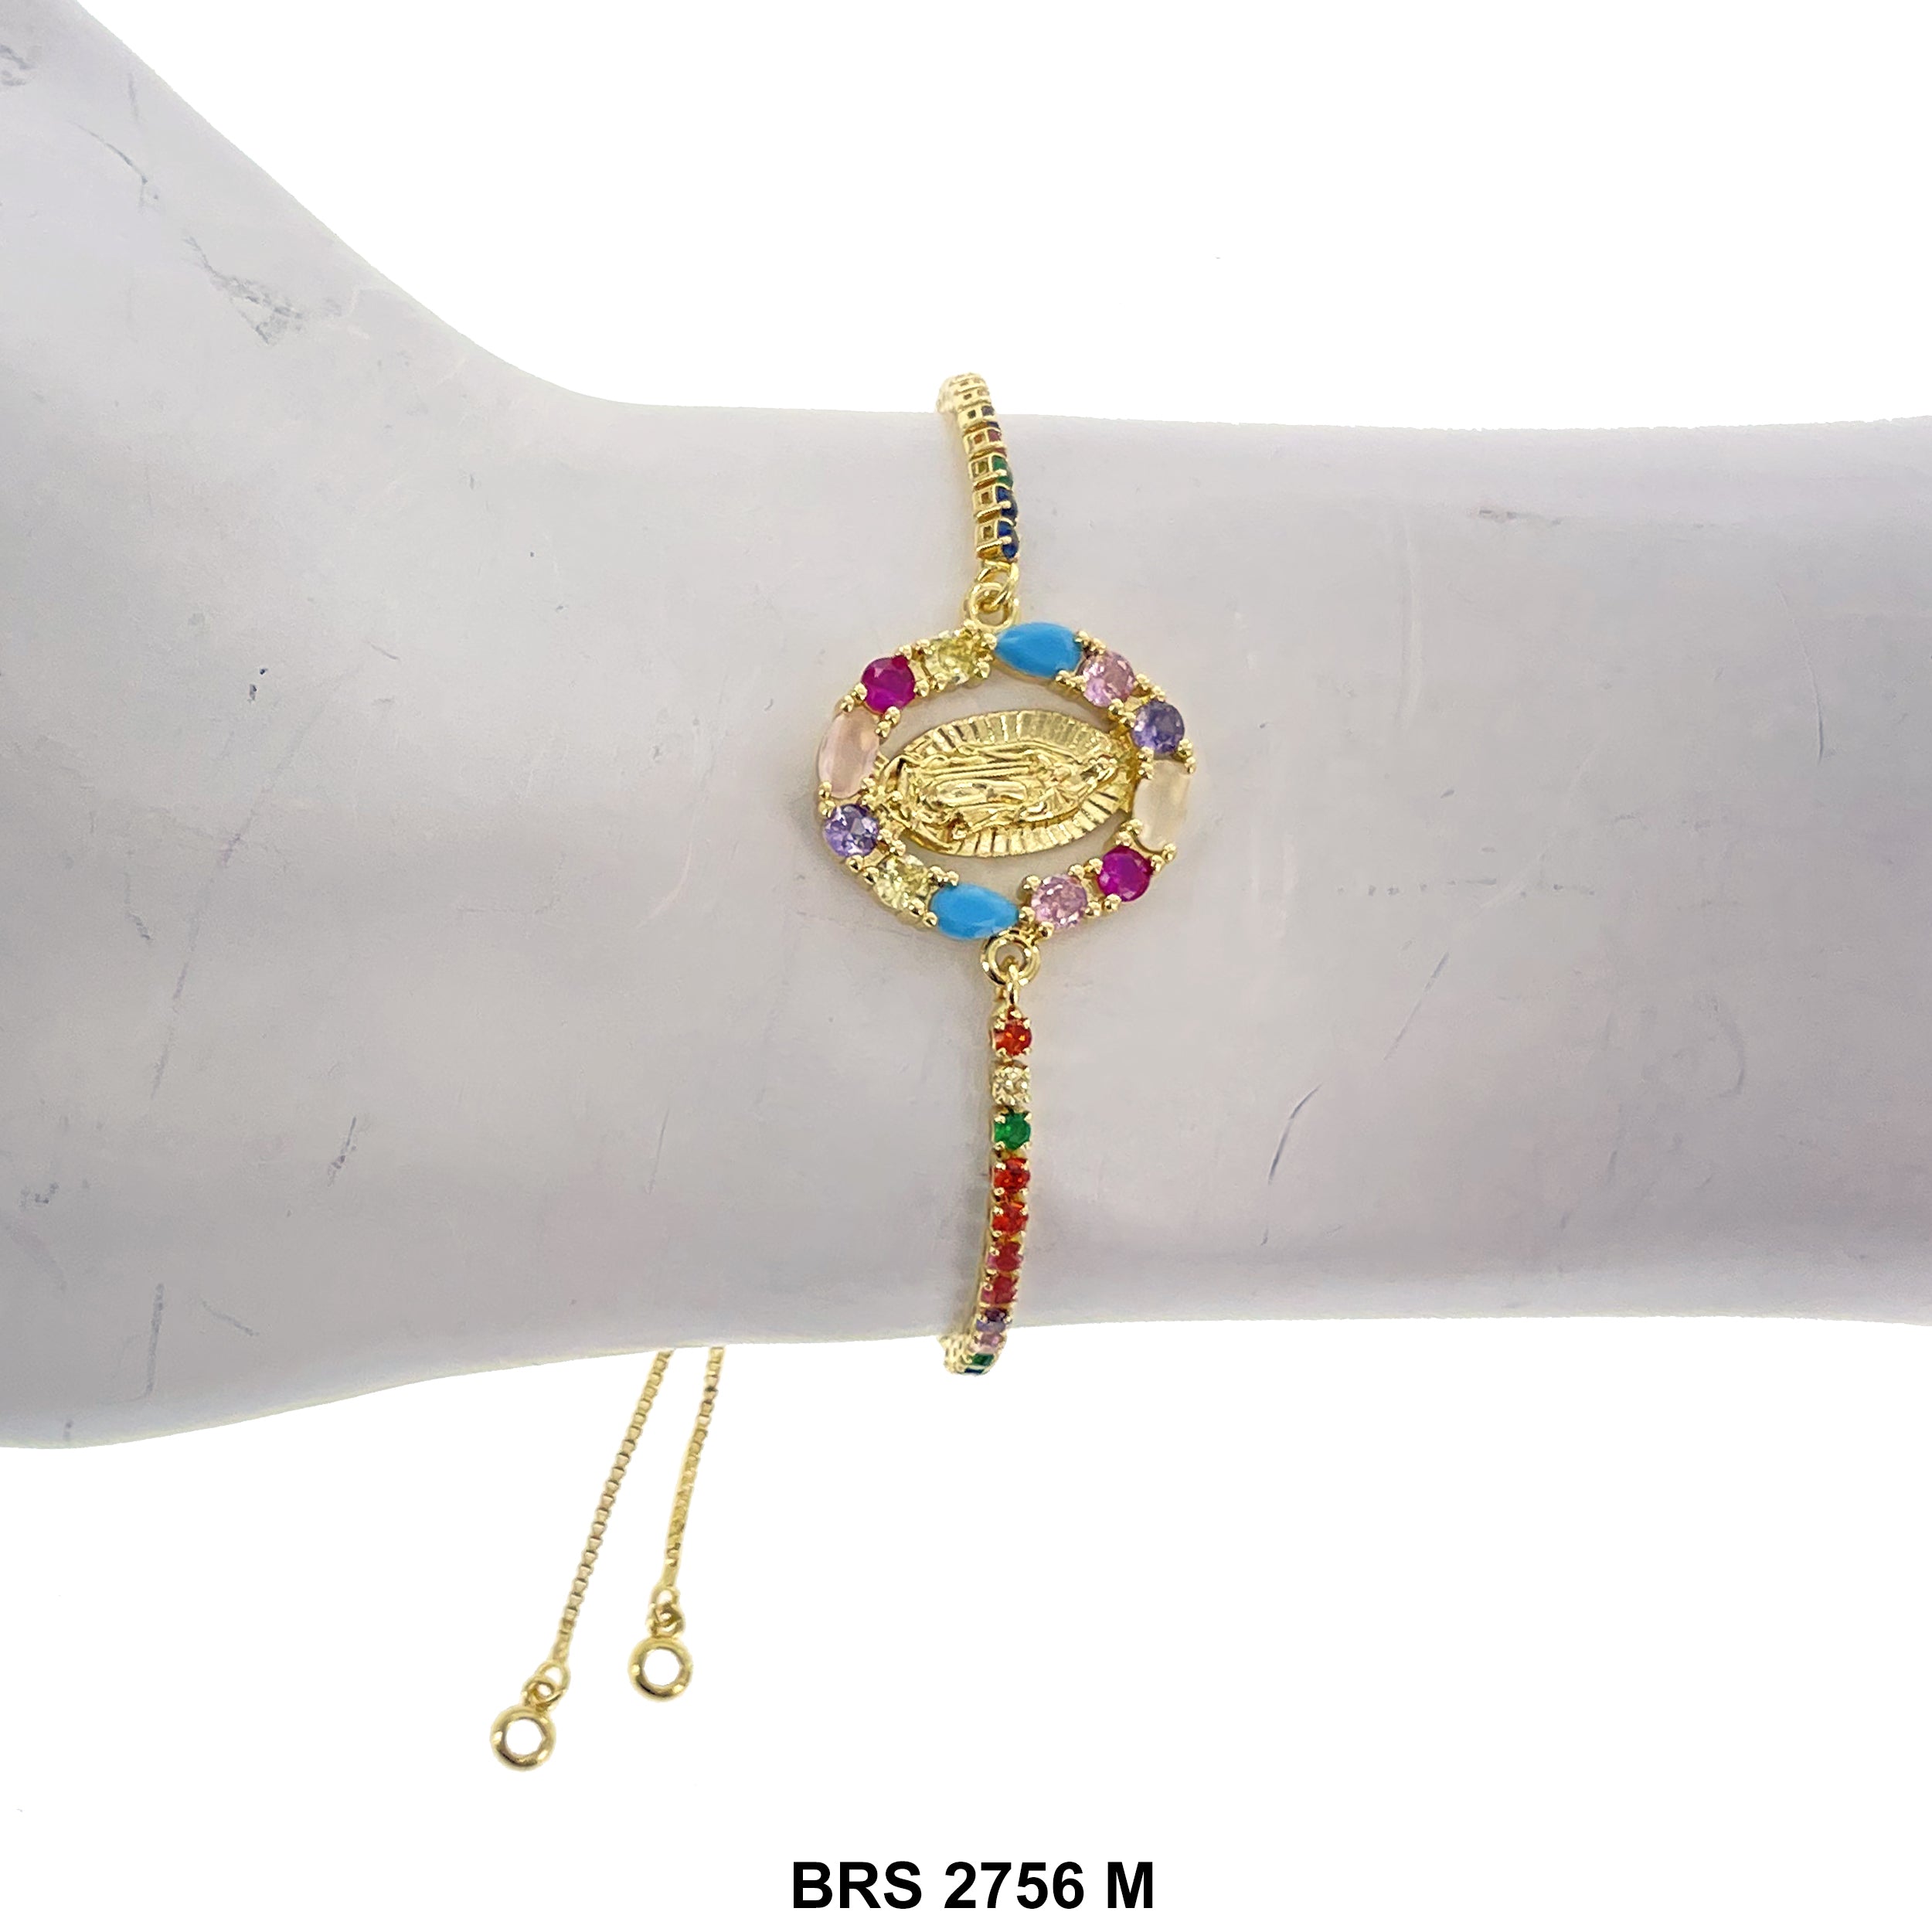 Guadalupe Adjustable Bracelet BRS 2756 M